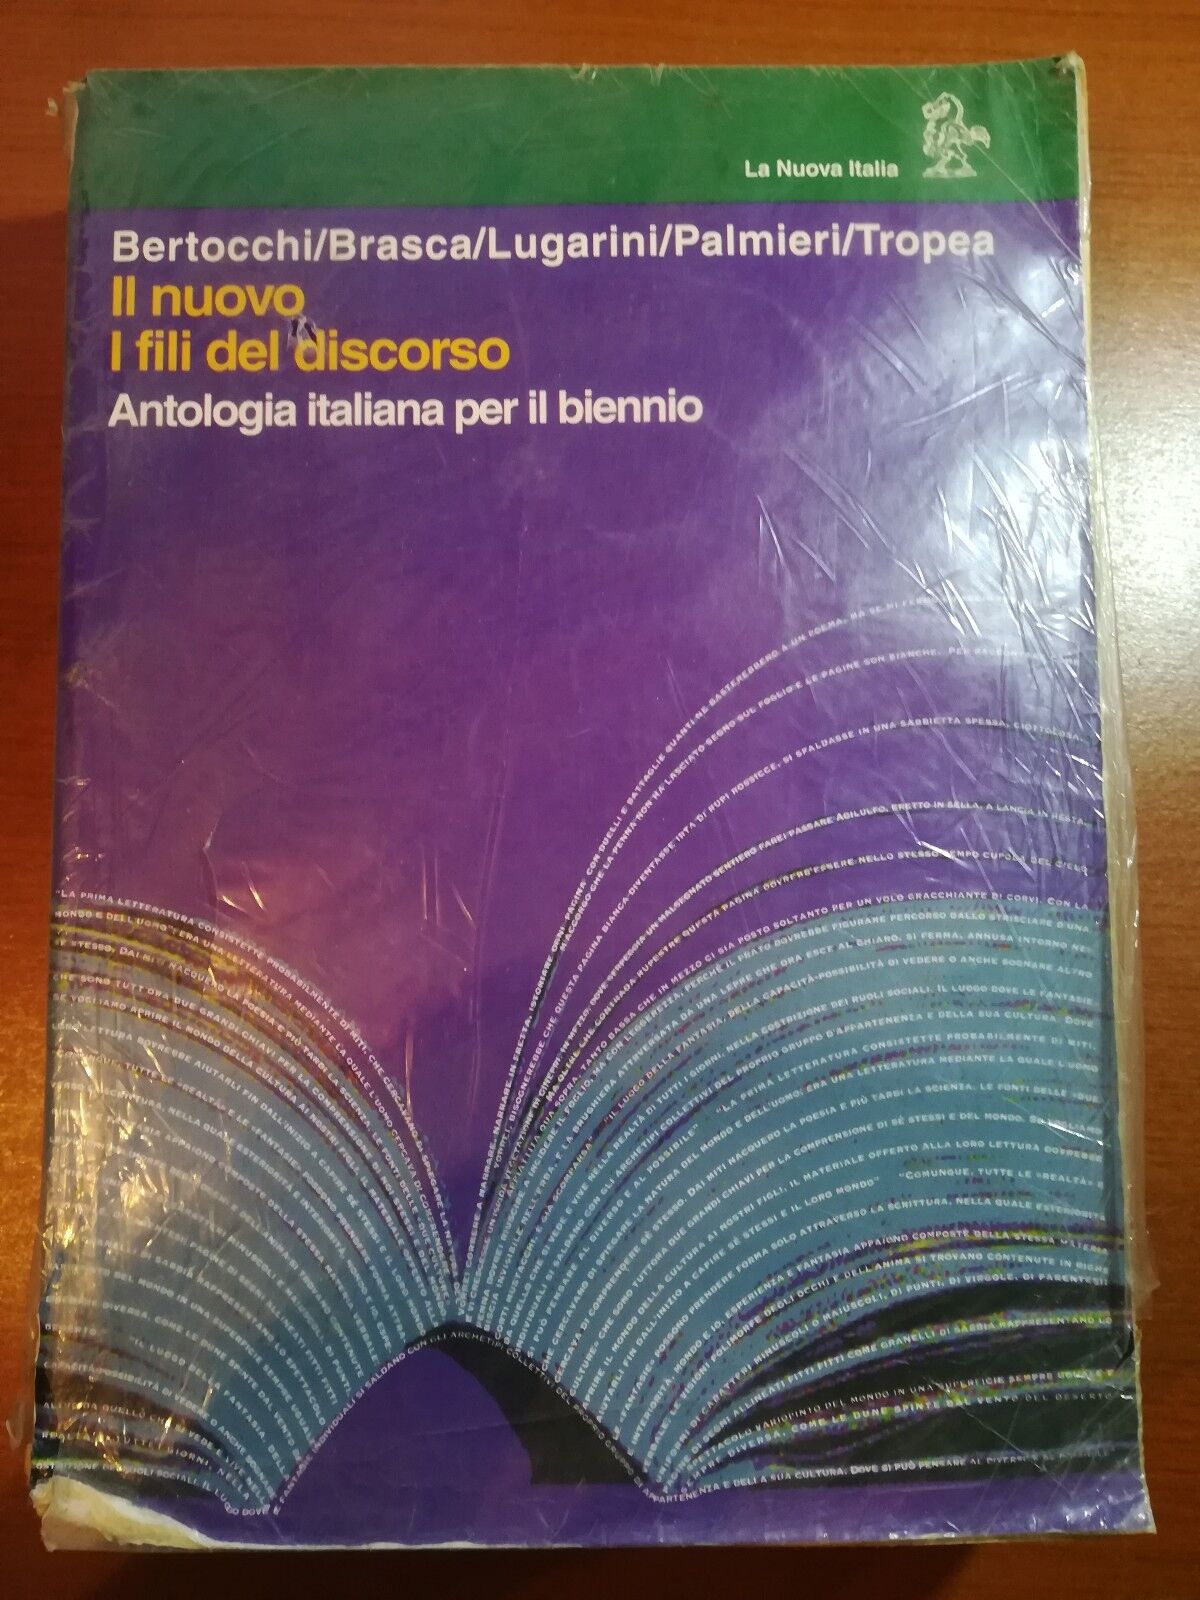 I fili del discorso - AA.VV. - La nuova italia - 1994 - M